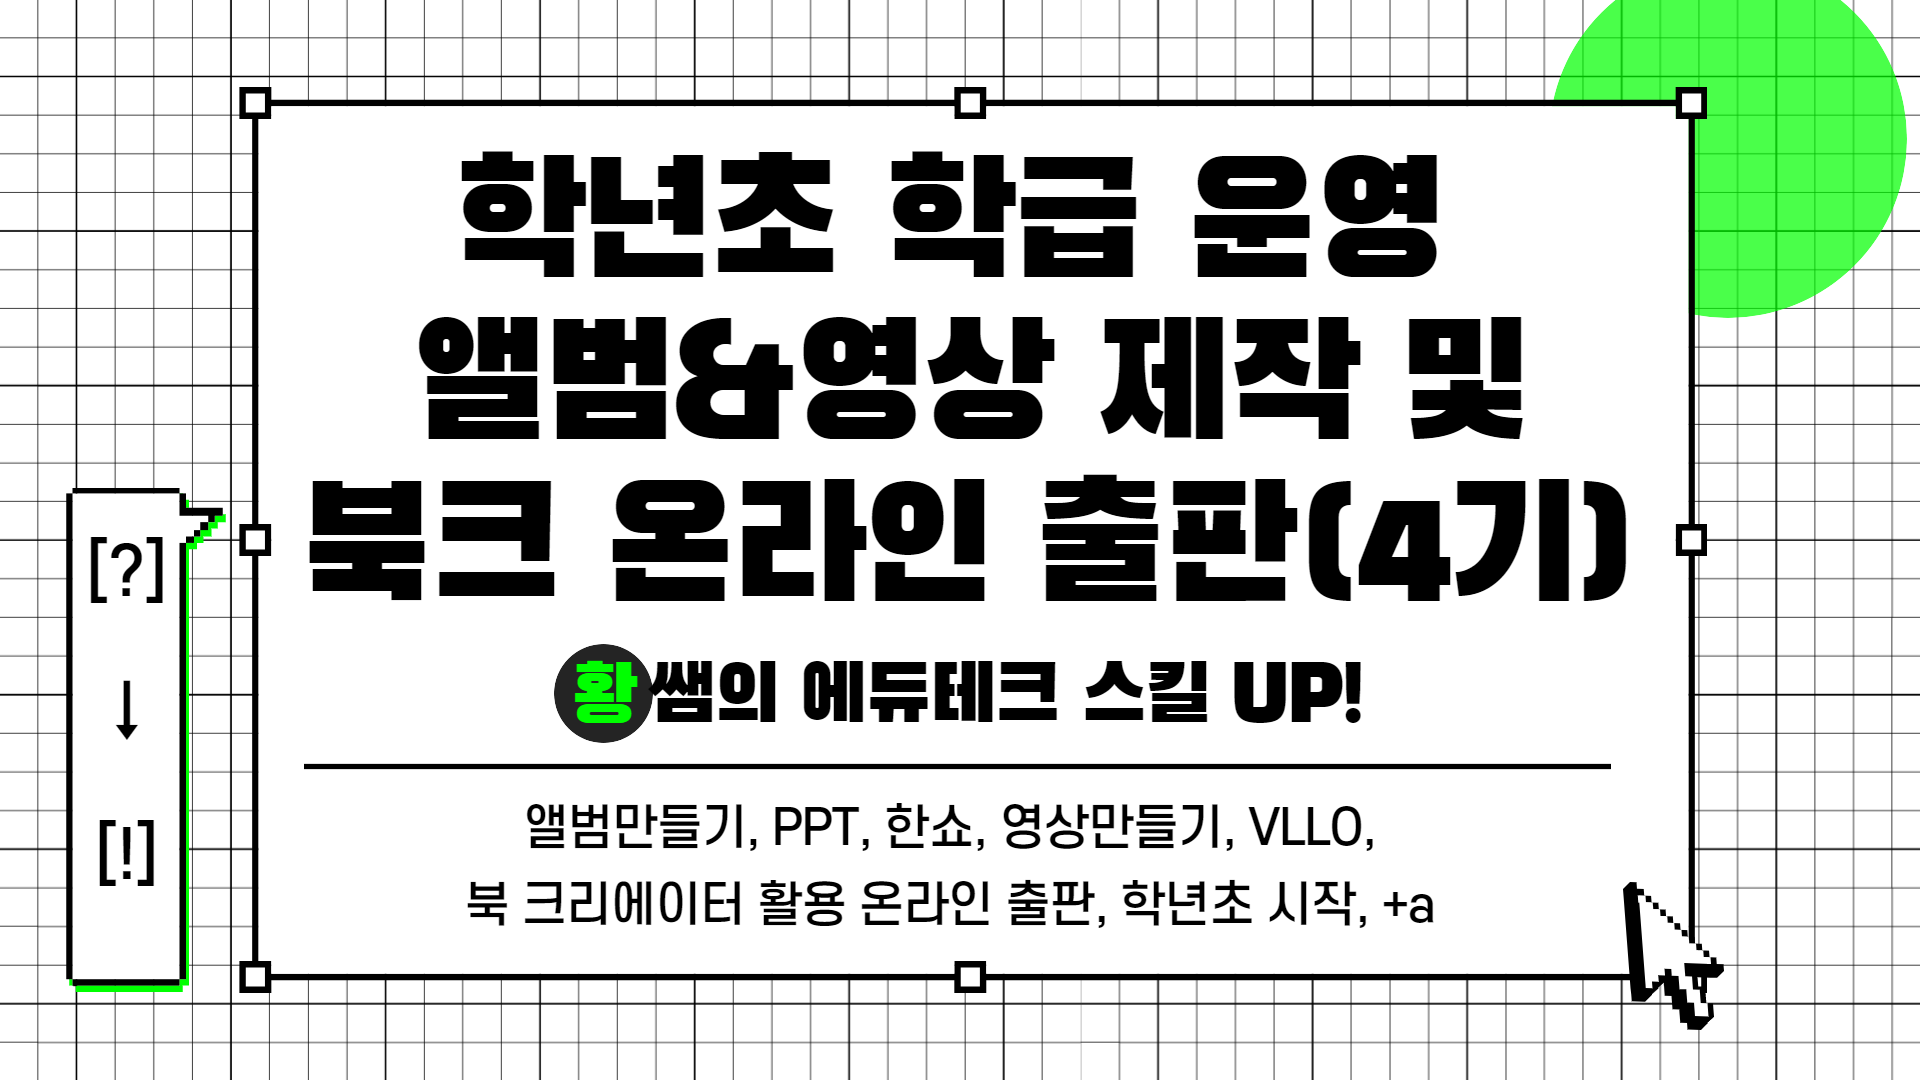 [?] → [!] 황쌤의 에듀테크 스킬 UP!(학급 운영 앨범&영상 제작 및 온라인 출판(4기))